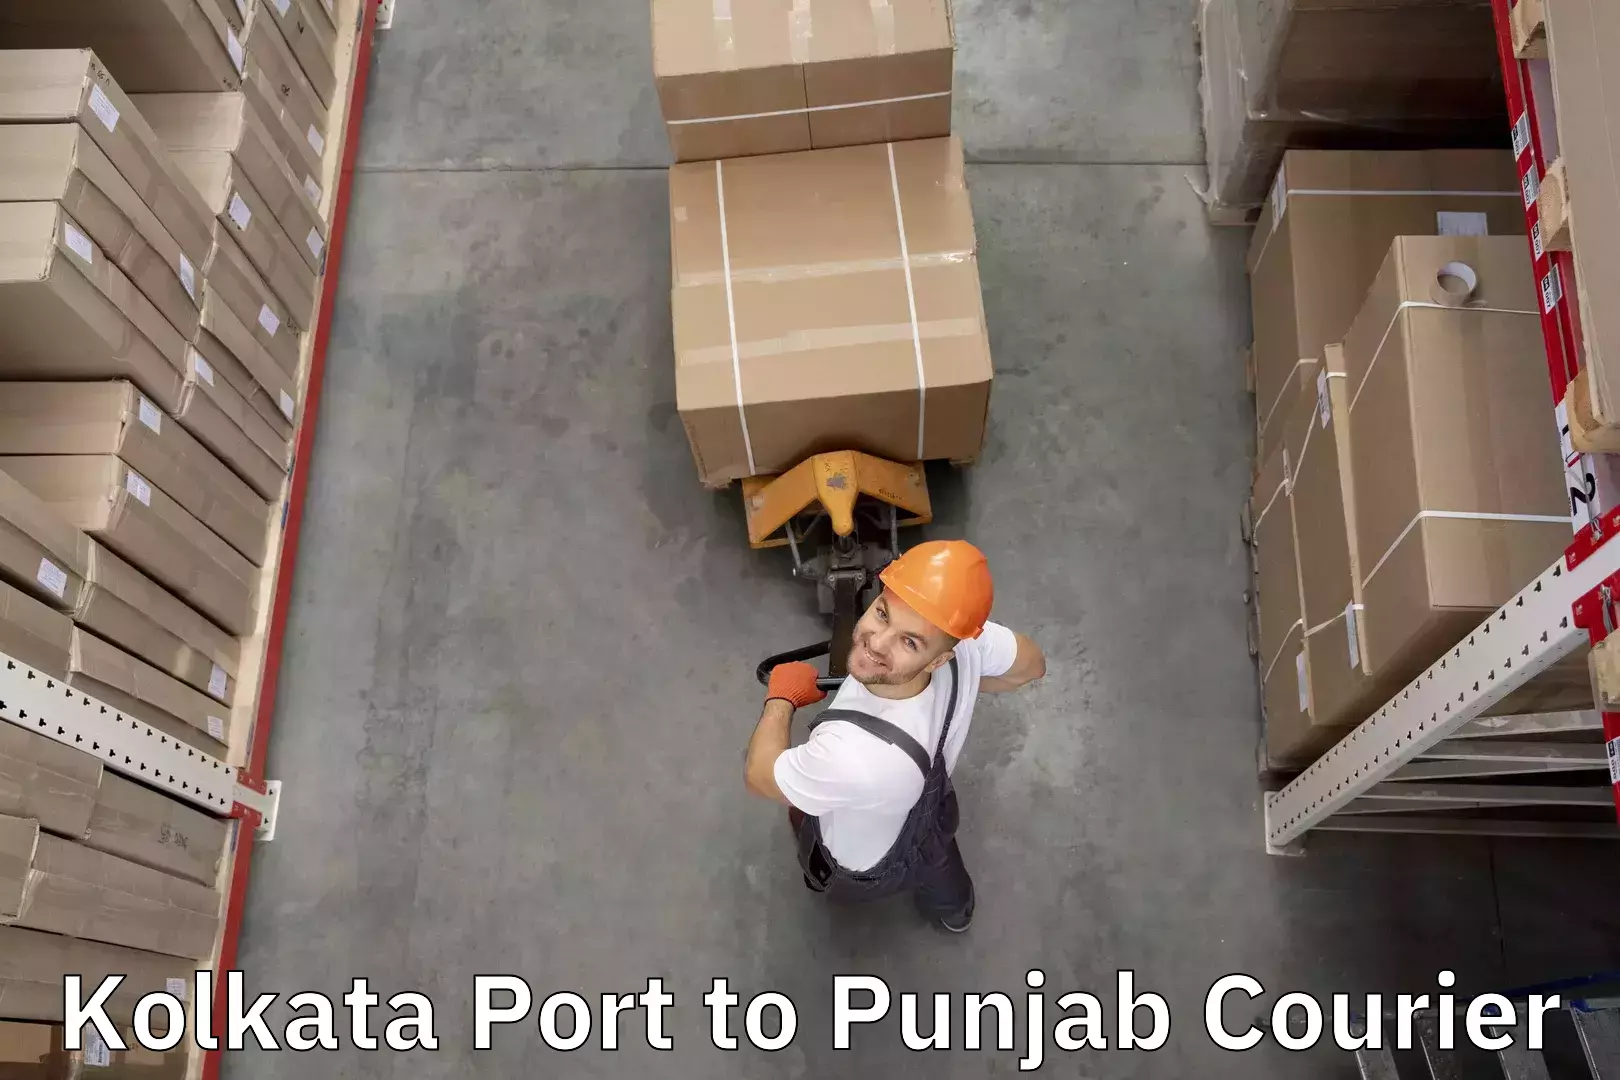 Luggage delivery app Kolkata Port to Raikot